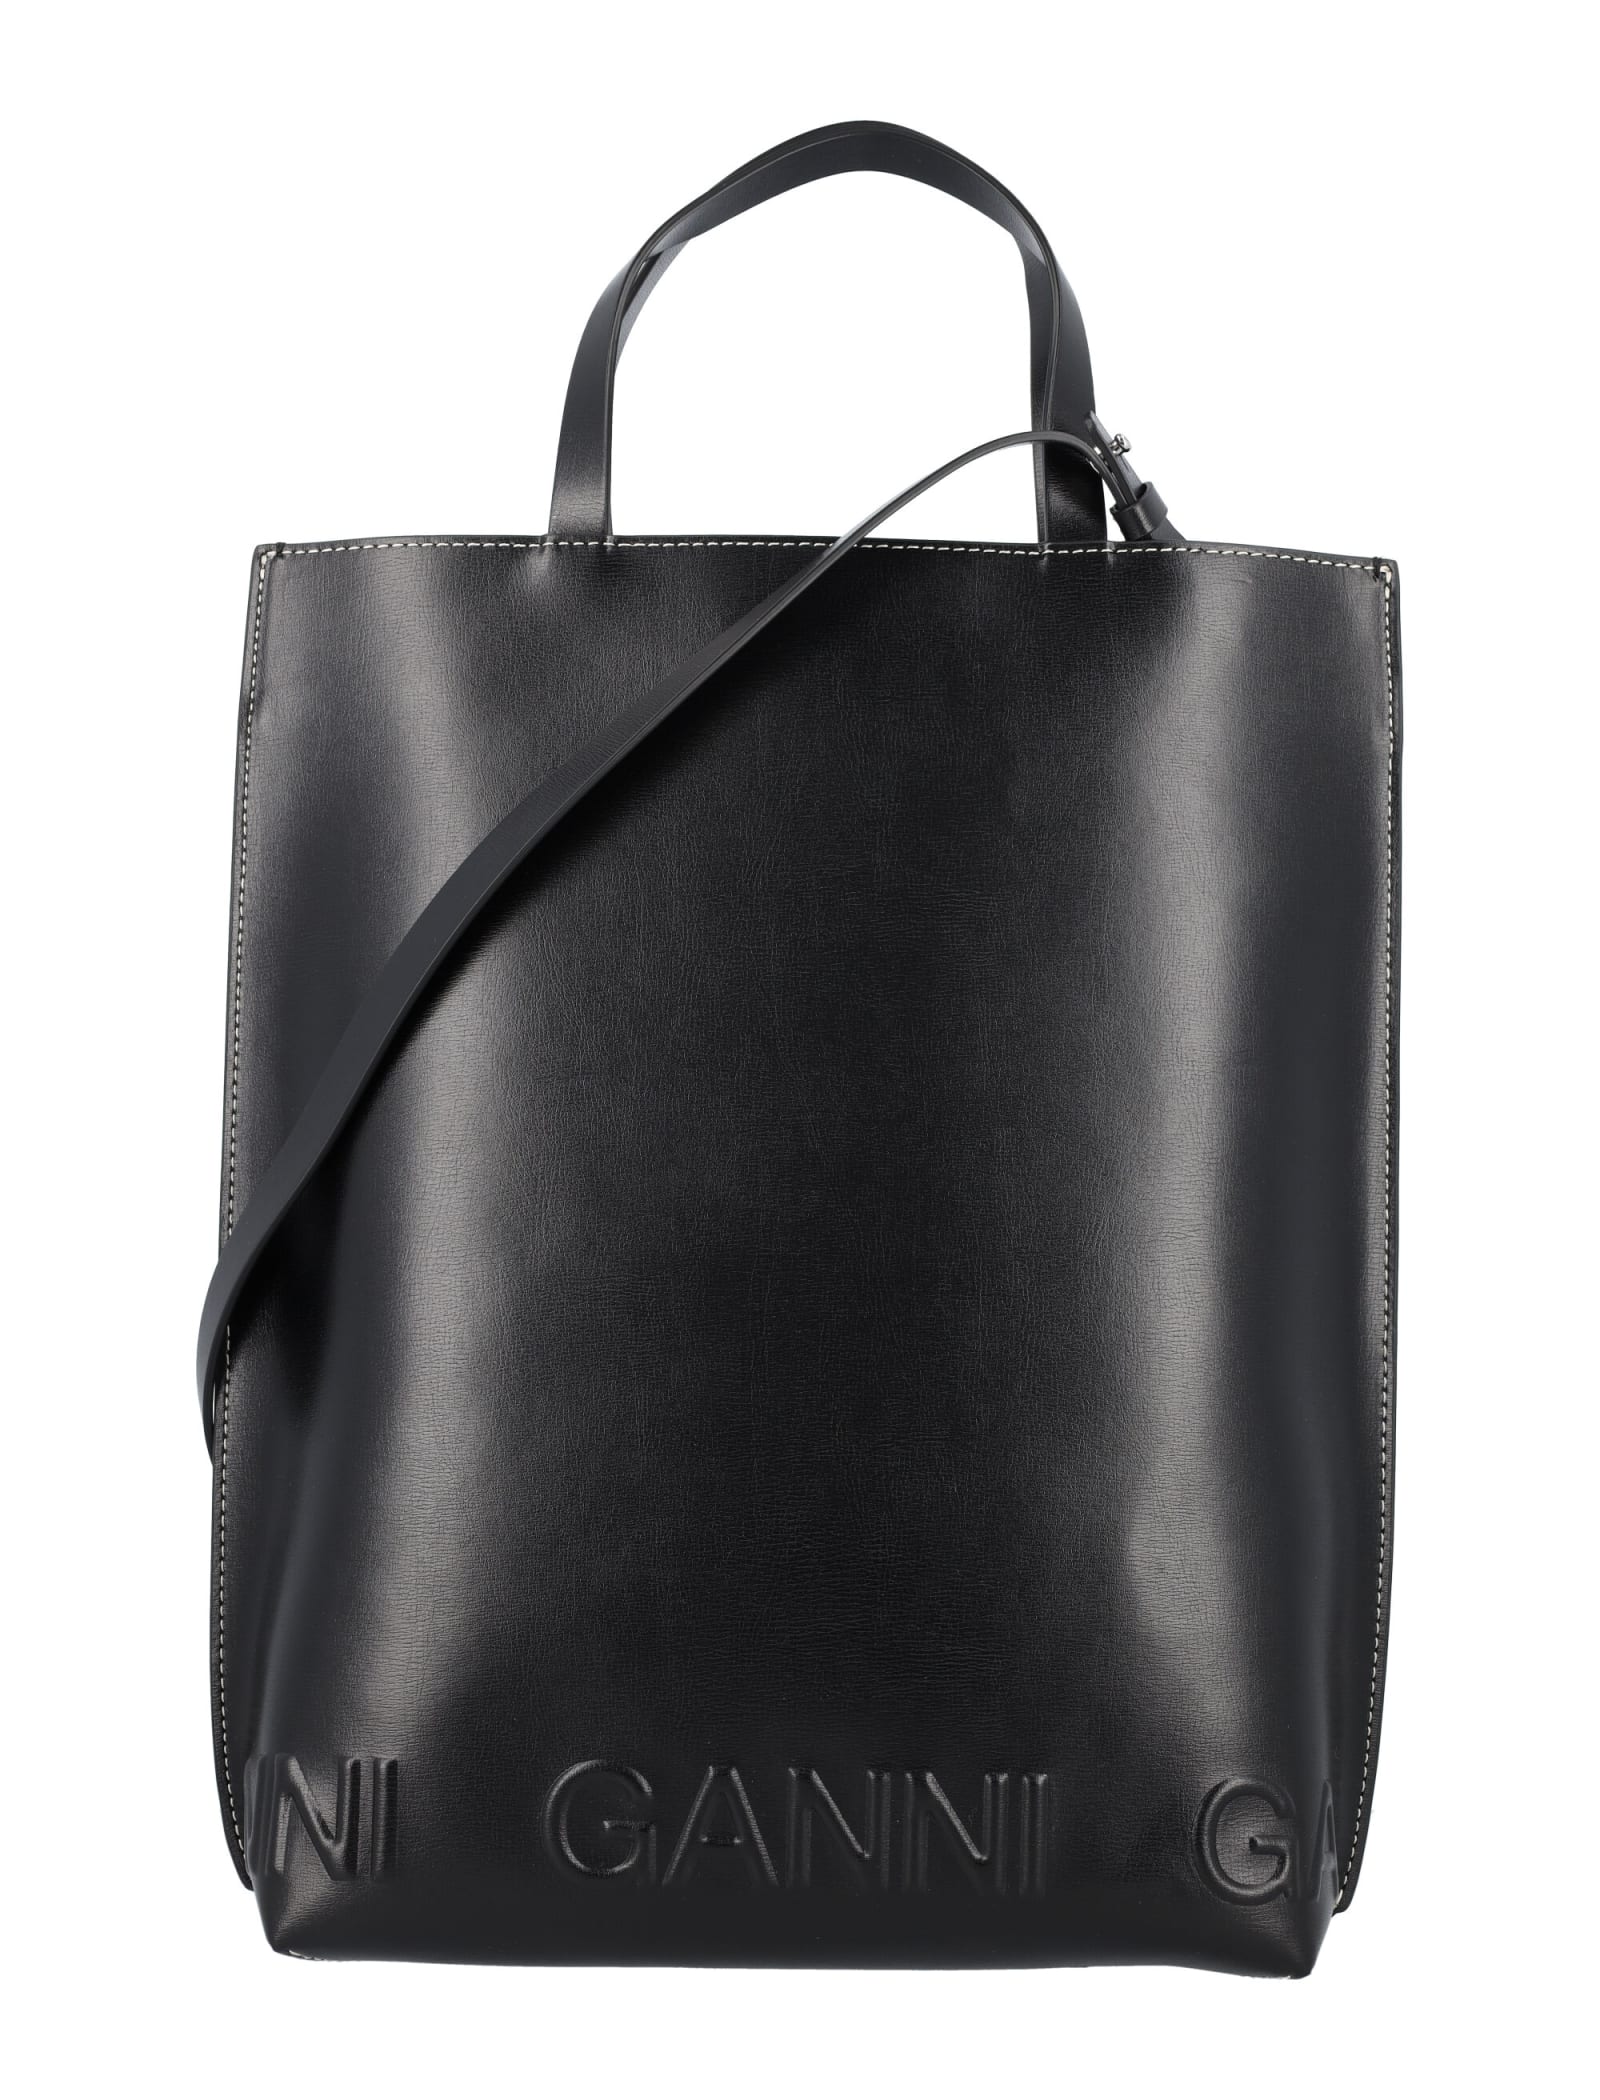 Ganni Medium Tote Bag